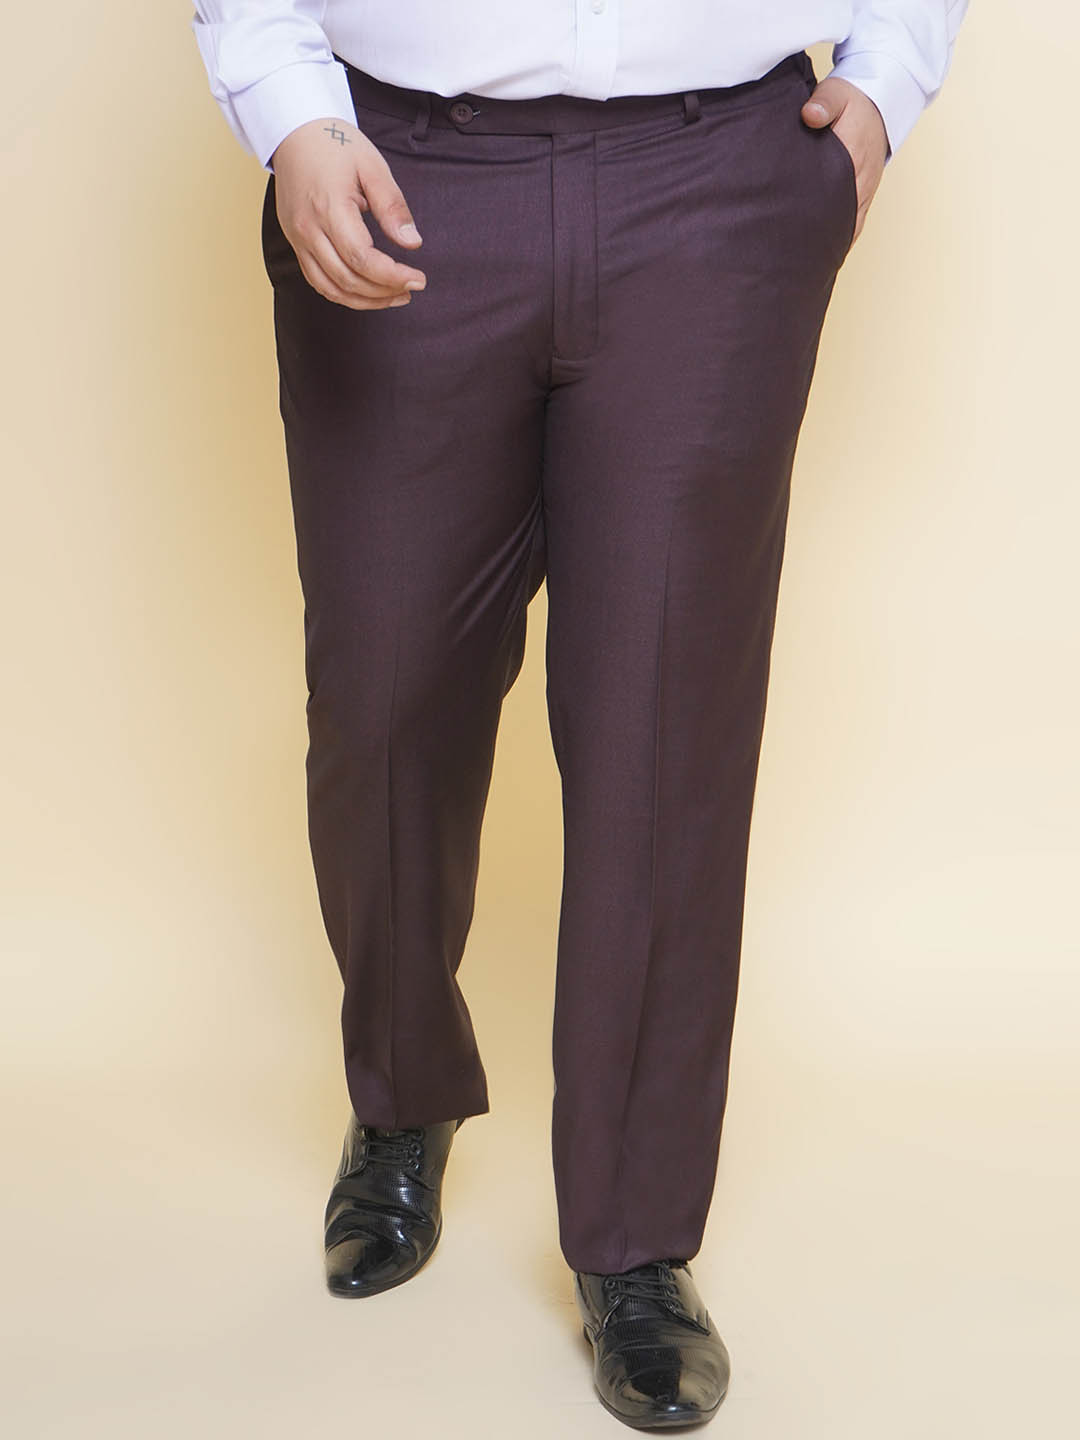 bottomwear/trousers/JPTR22010K/jptr22010k-1.jpg